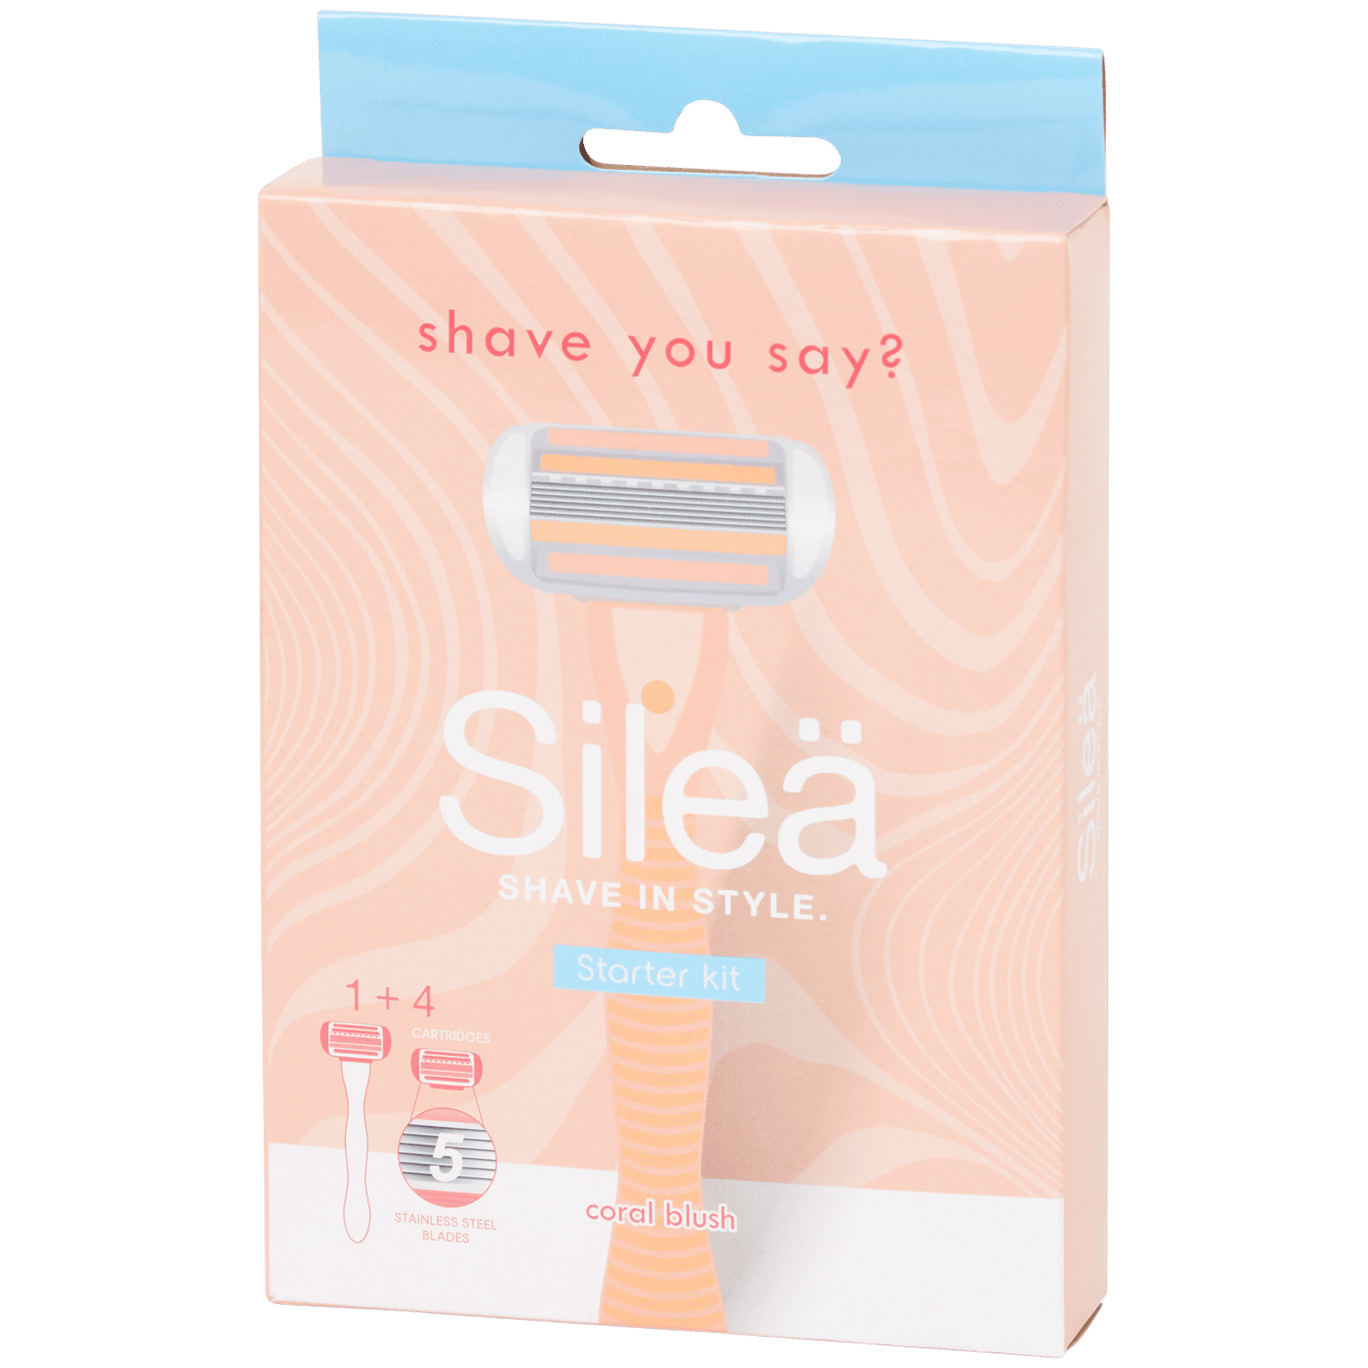 Starter kit rasoio Silea